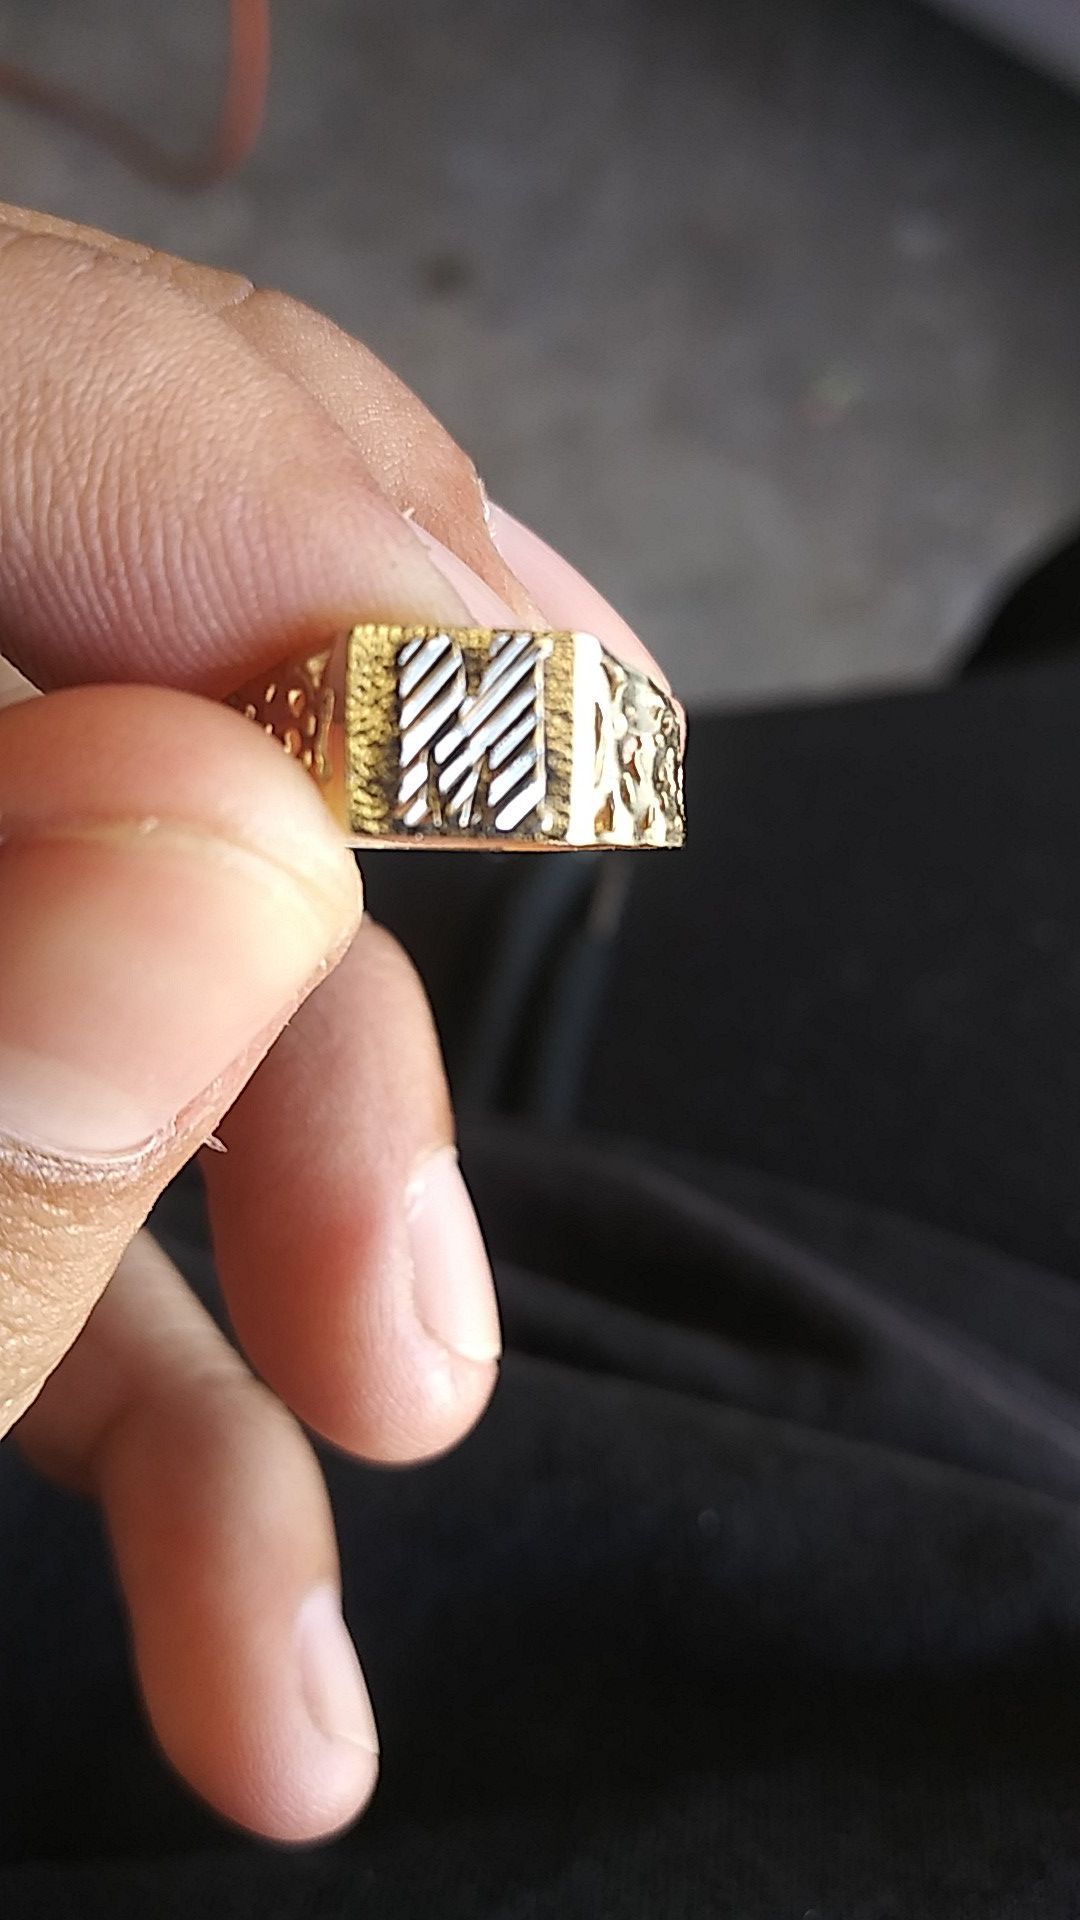 10k Gold ring shoot an offer